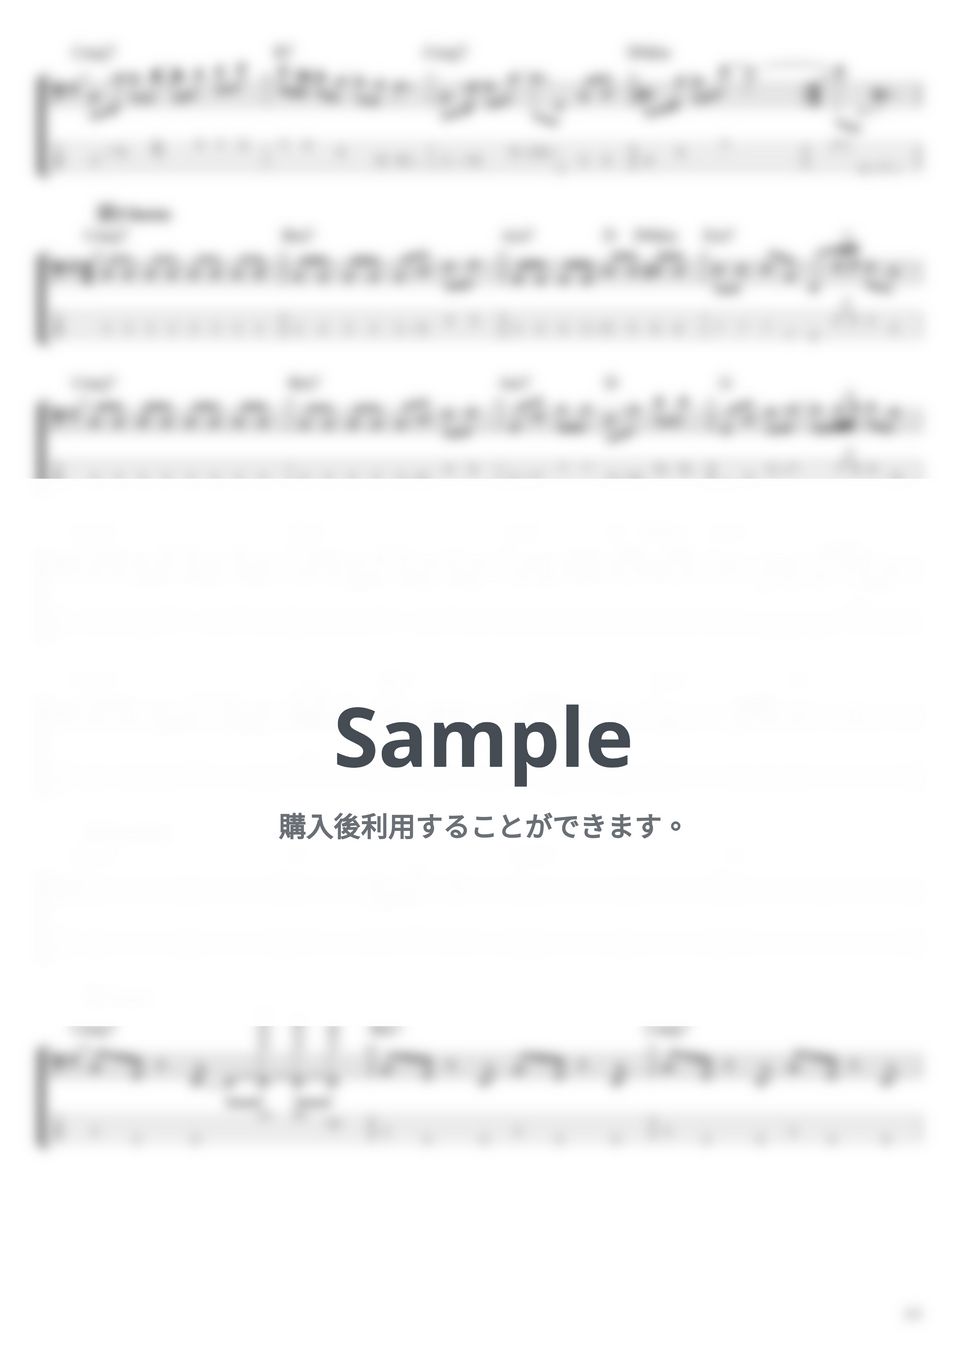 緑黄色社会 - 大人ごっこ (ベース Tab譜 4弦) by T's bass score